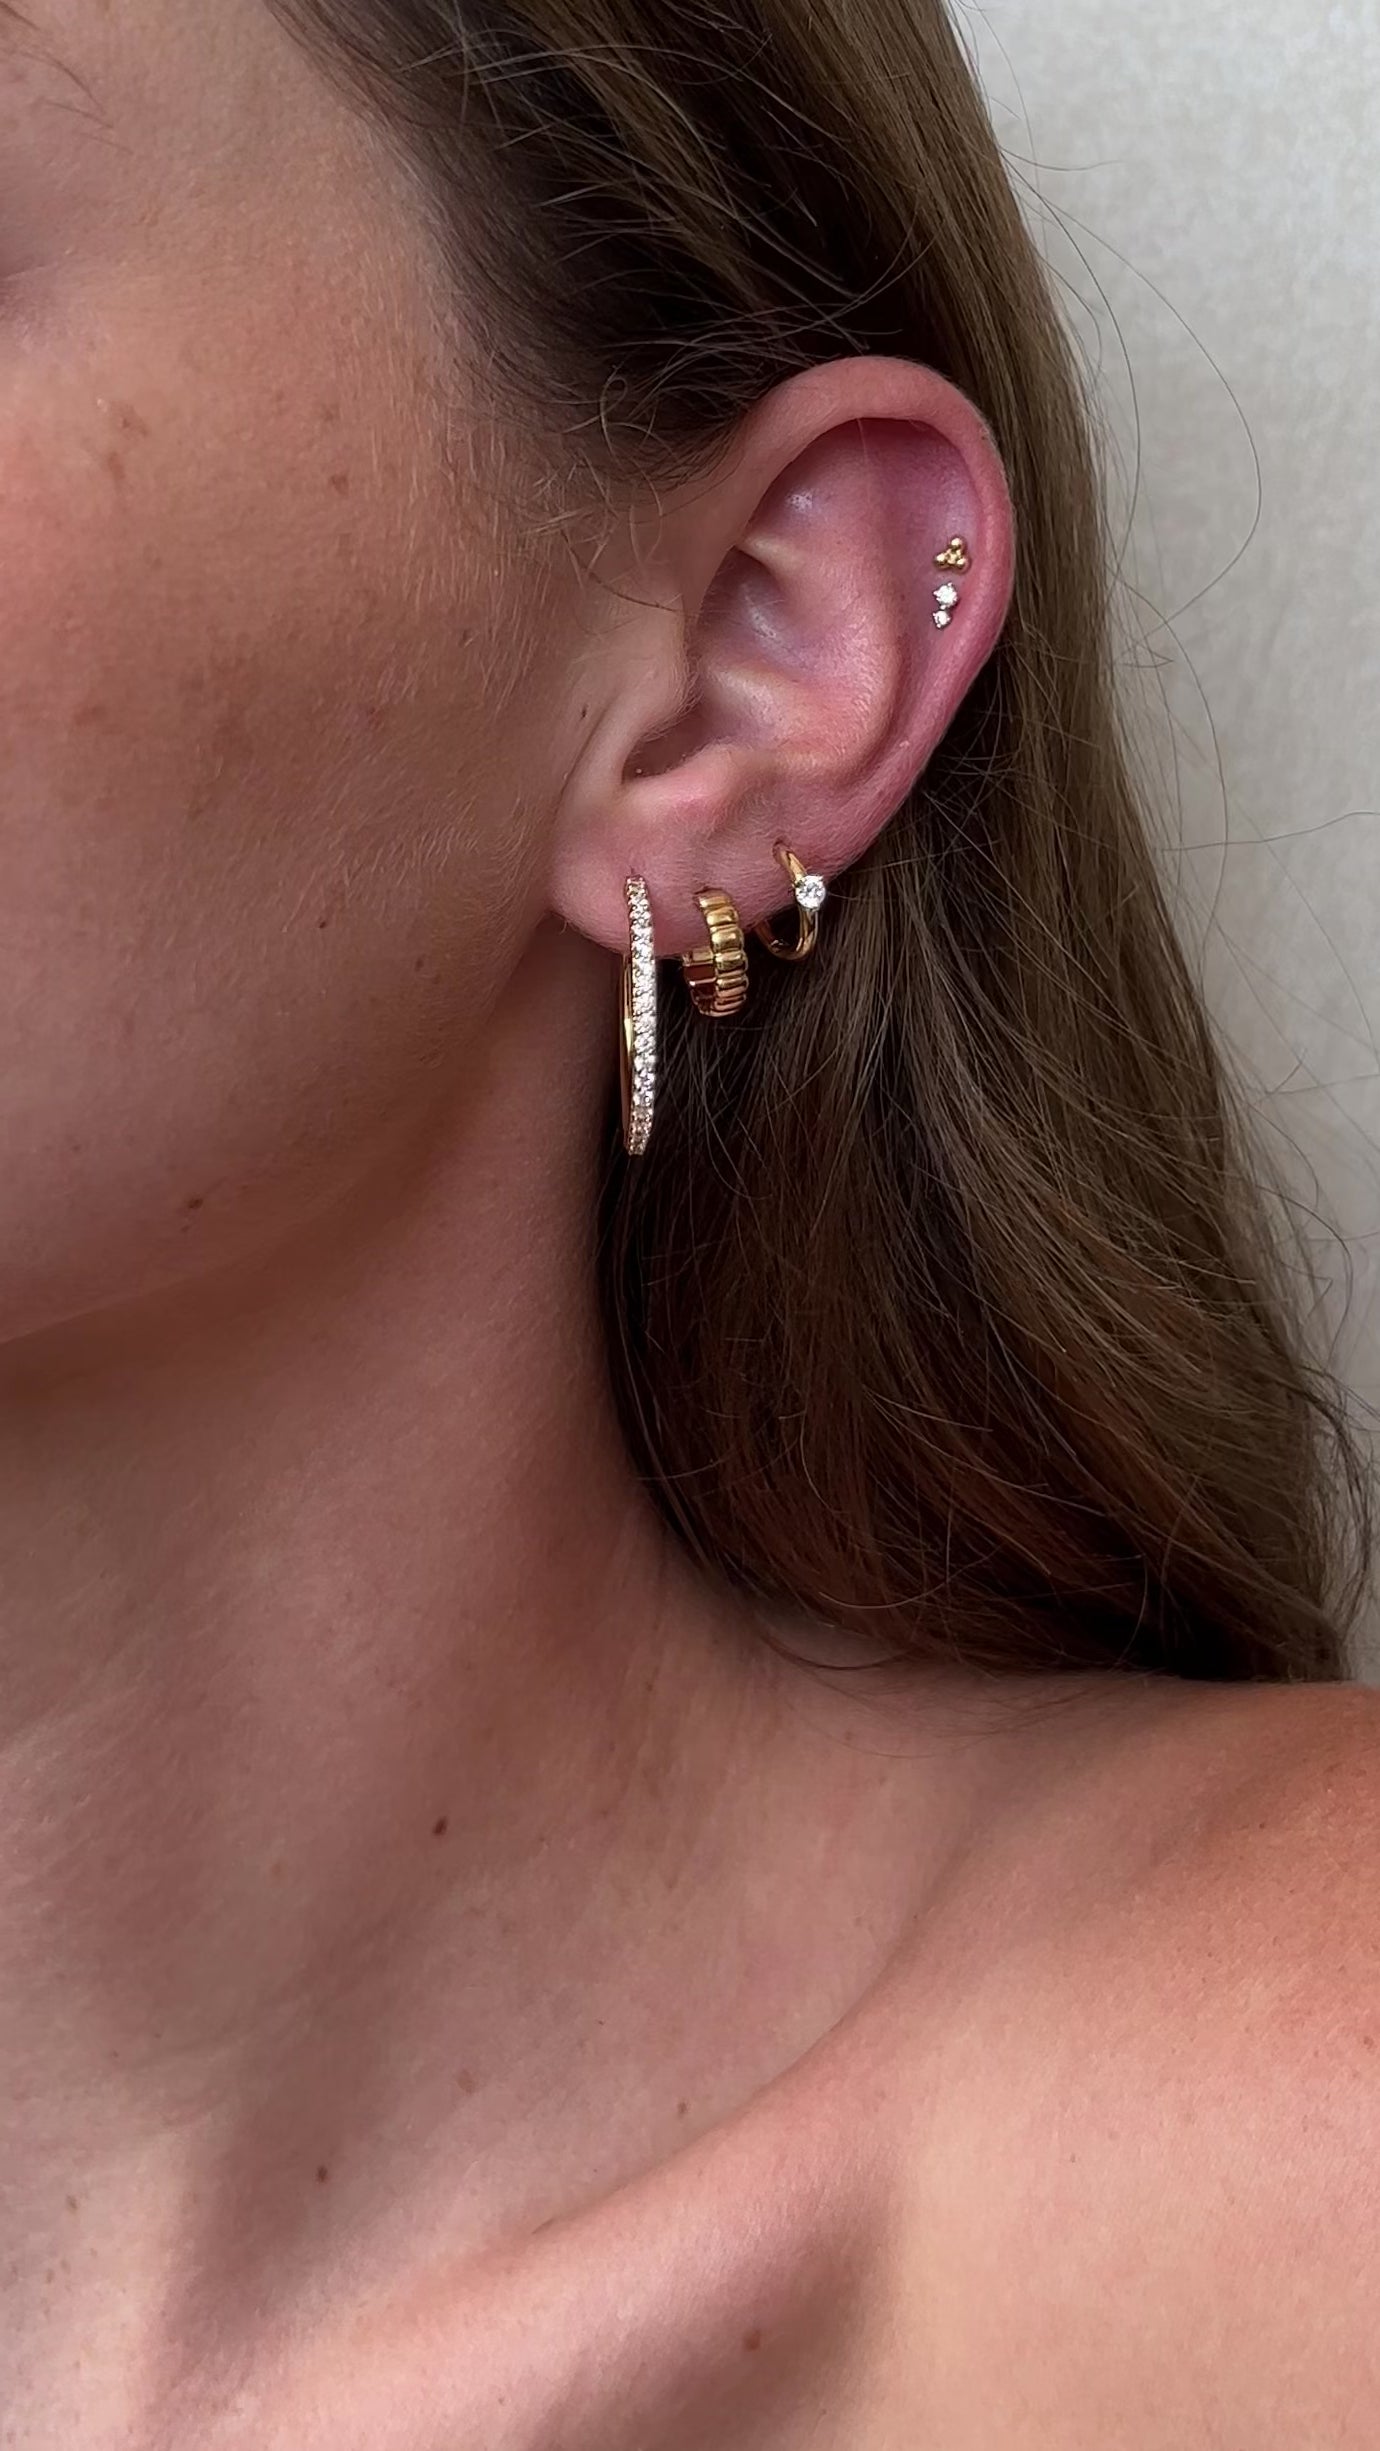 Asia earrings